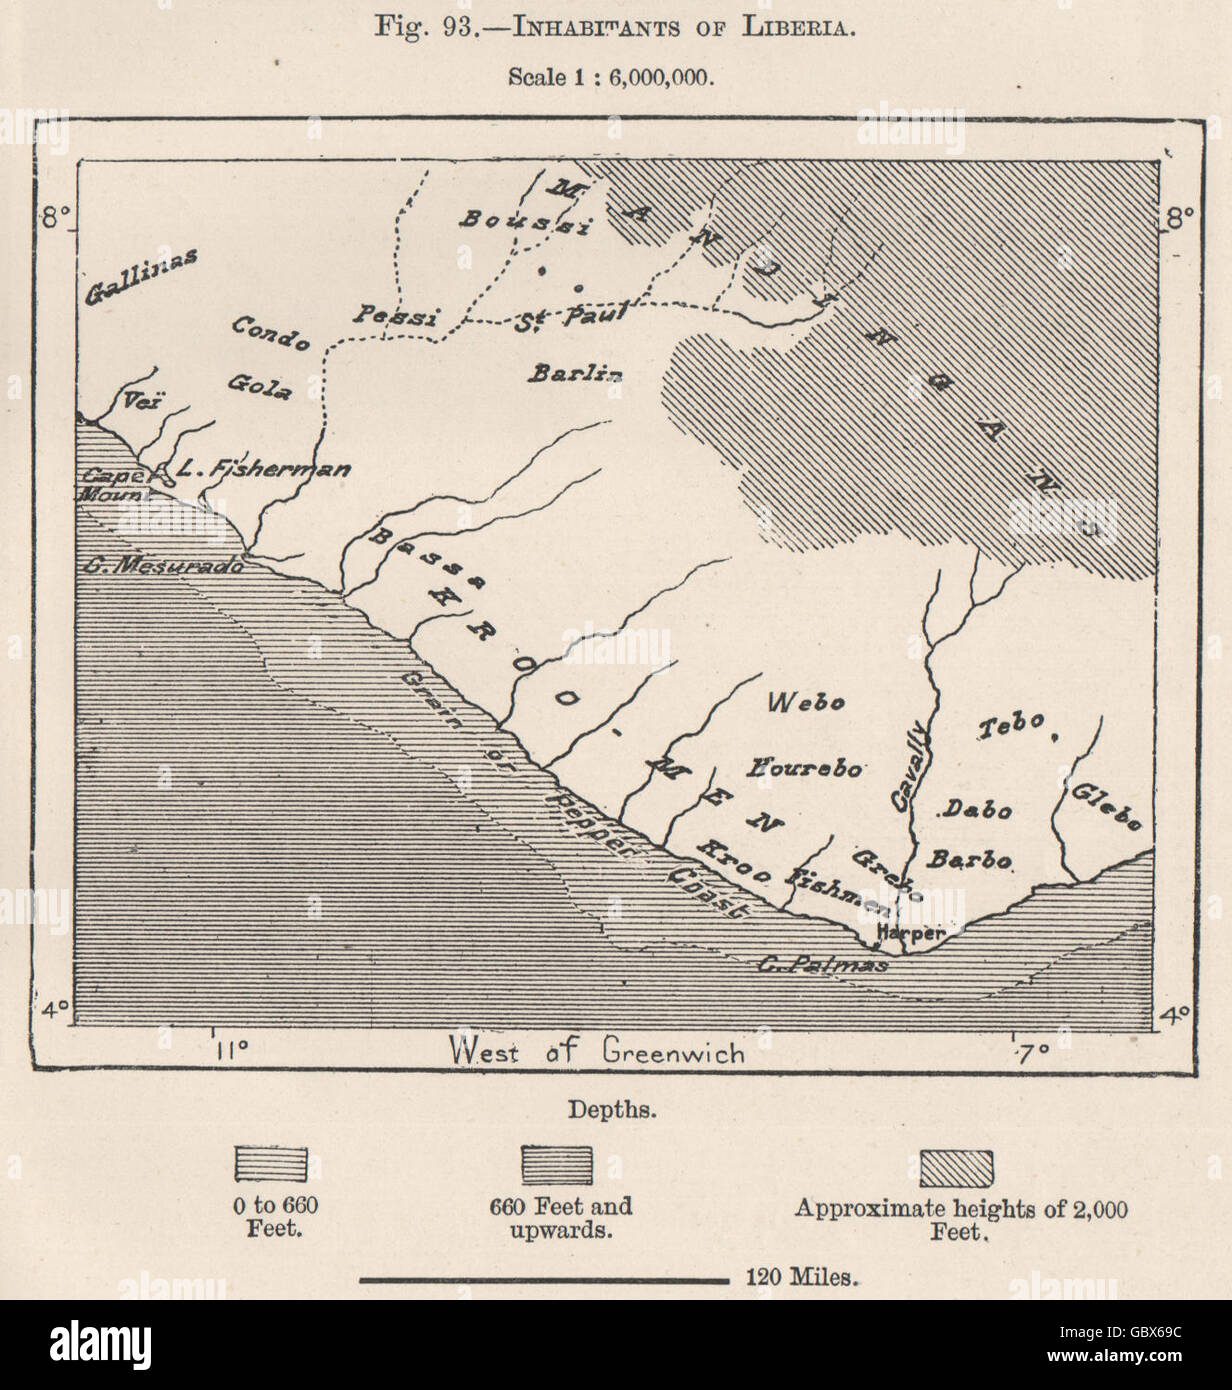 Los Habitantes De Liberia 1885 Mapa Antiguo Fotografía De Stock Alamy